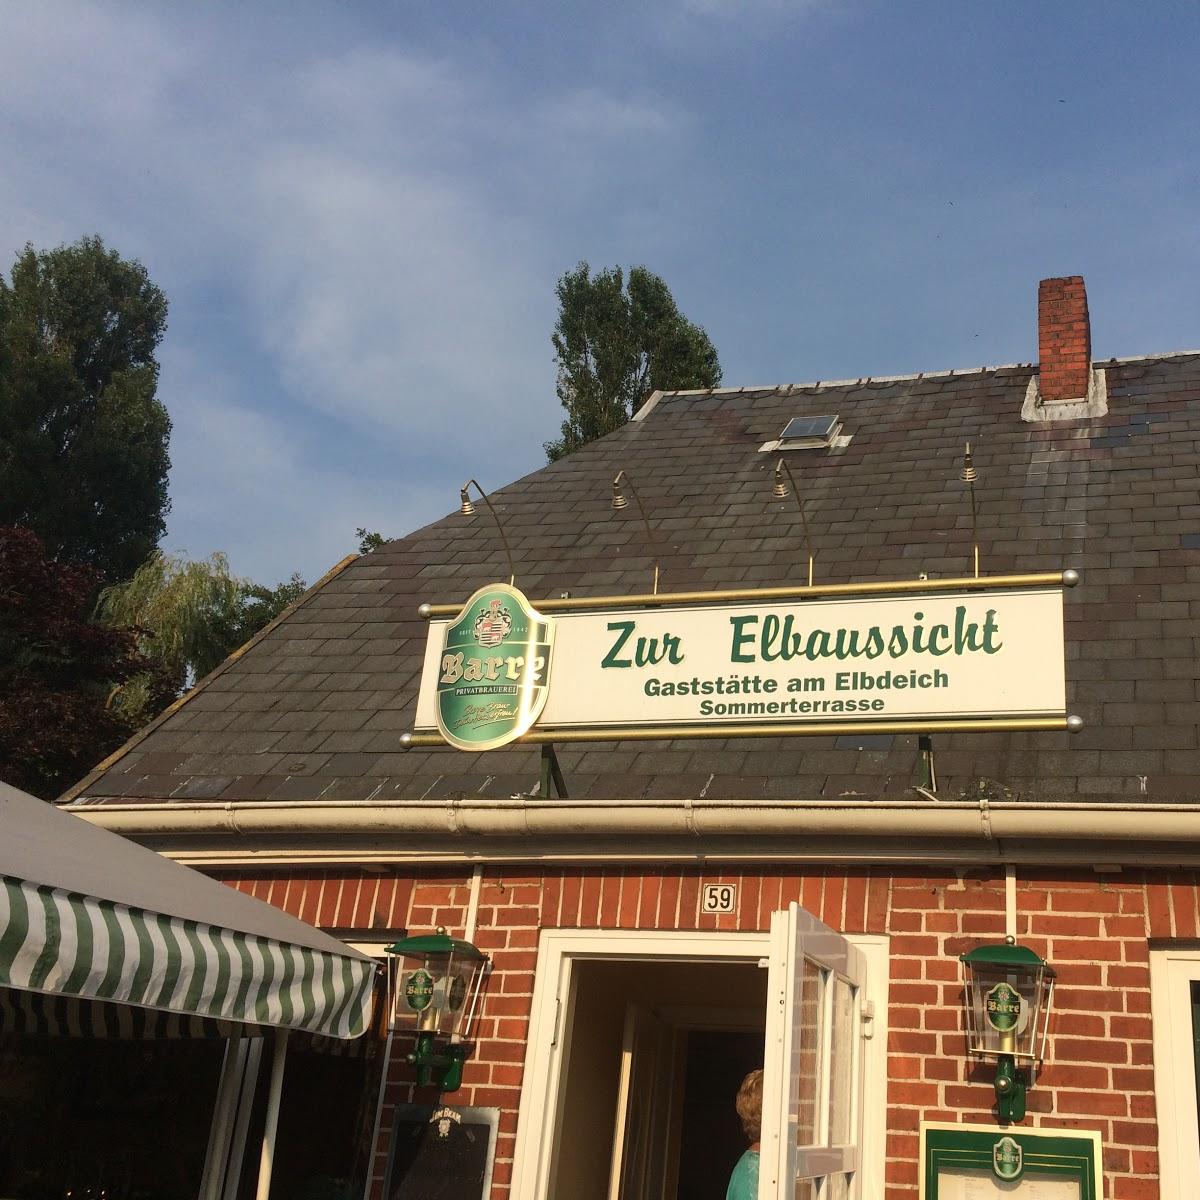 Restaurant "Zur Elbaussicht" in Drage